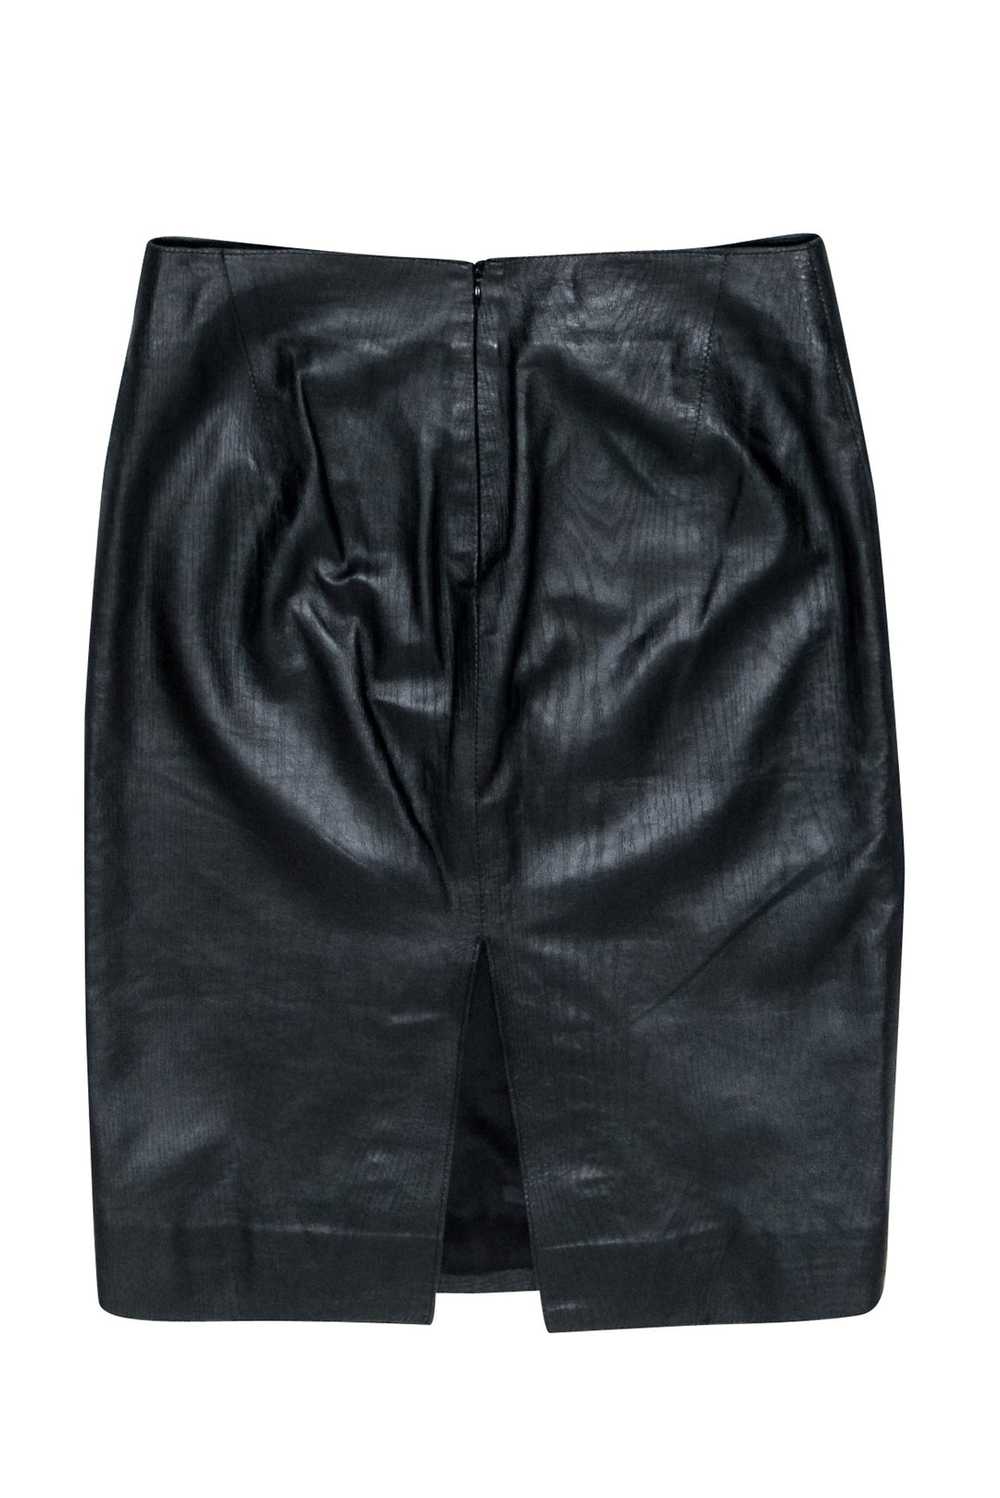 Tufi Duek - Black Textured Leather Pencil Skirt S… - image 2